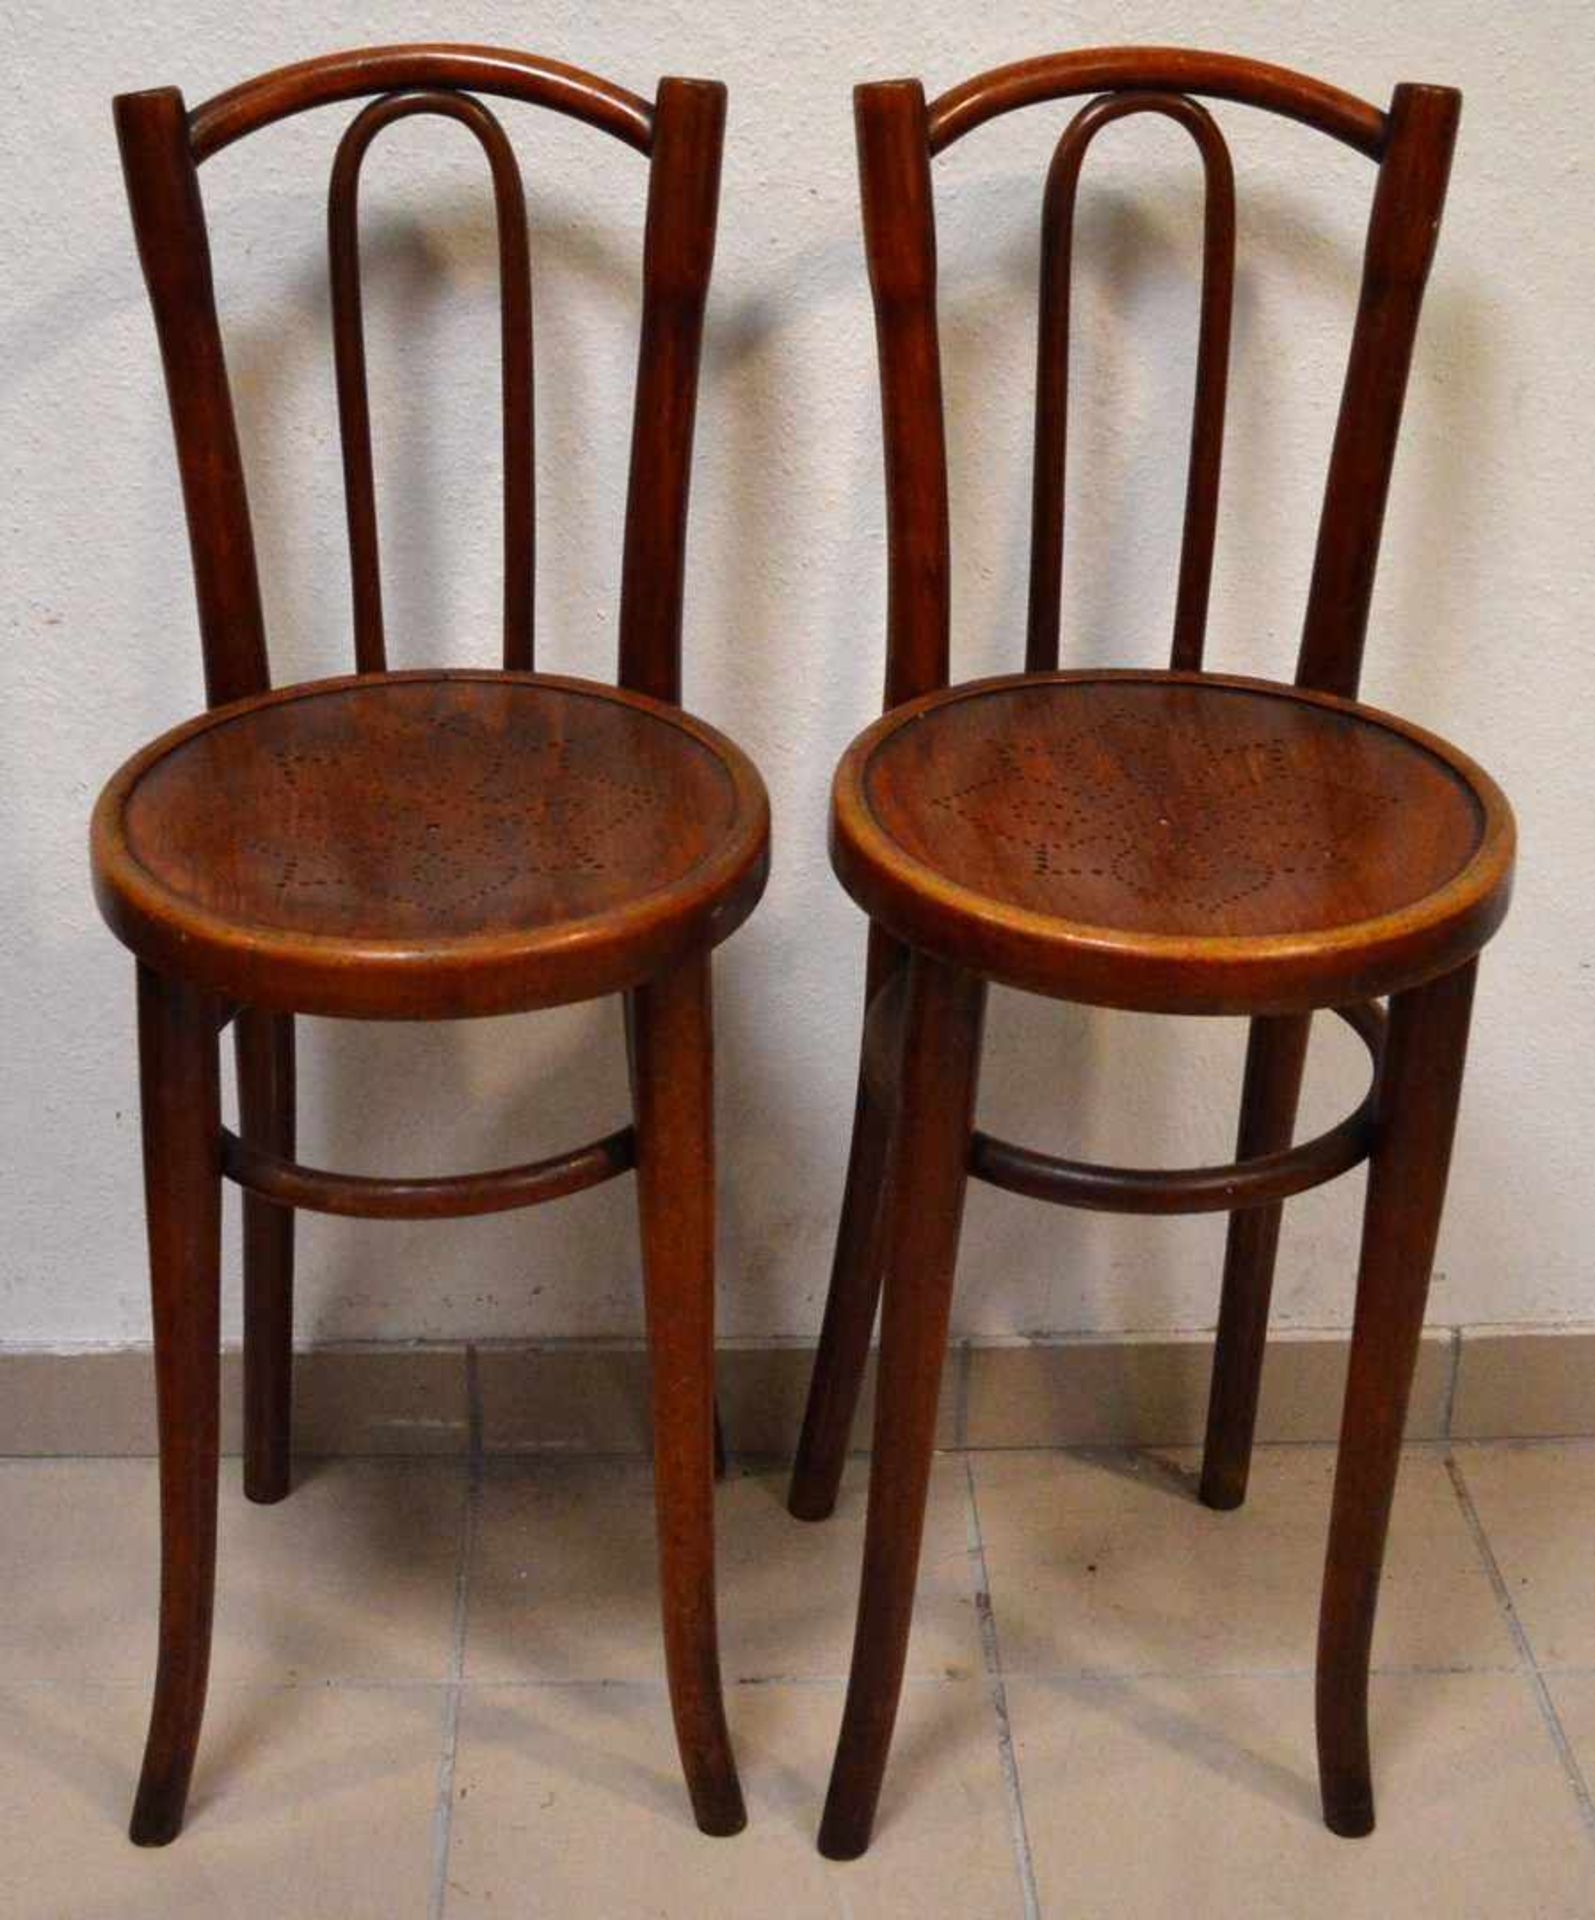 Paar Kinderstühle Hartholz, vier leicht geschwungene Beine, runder Sitz, geschwungener Rücken, H